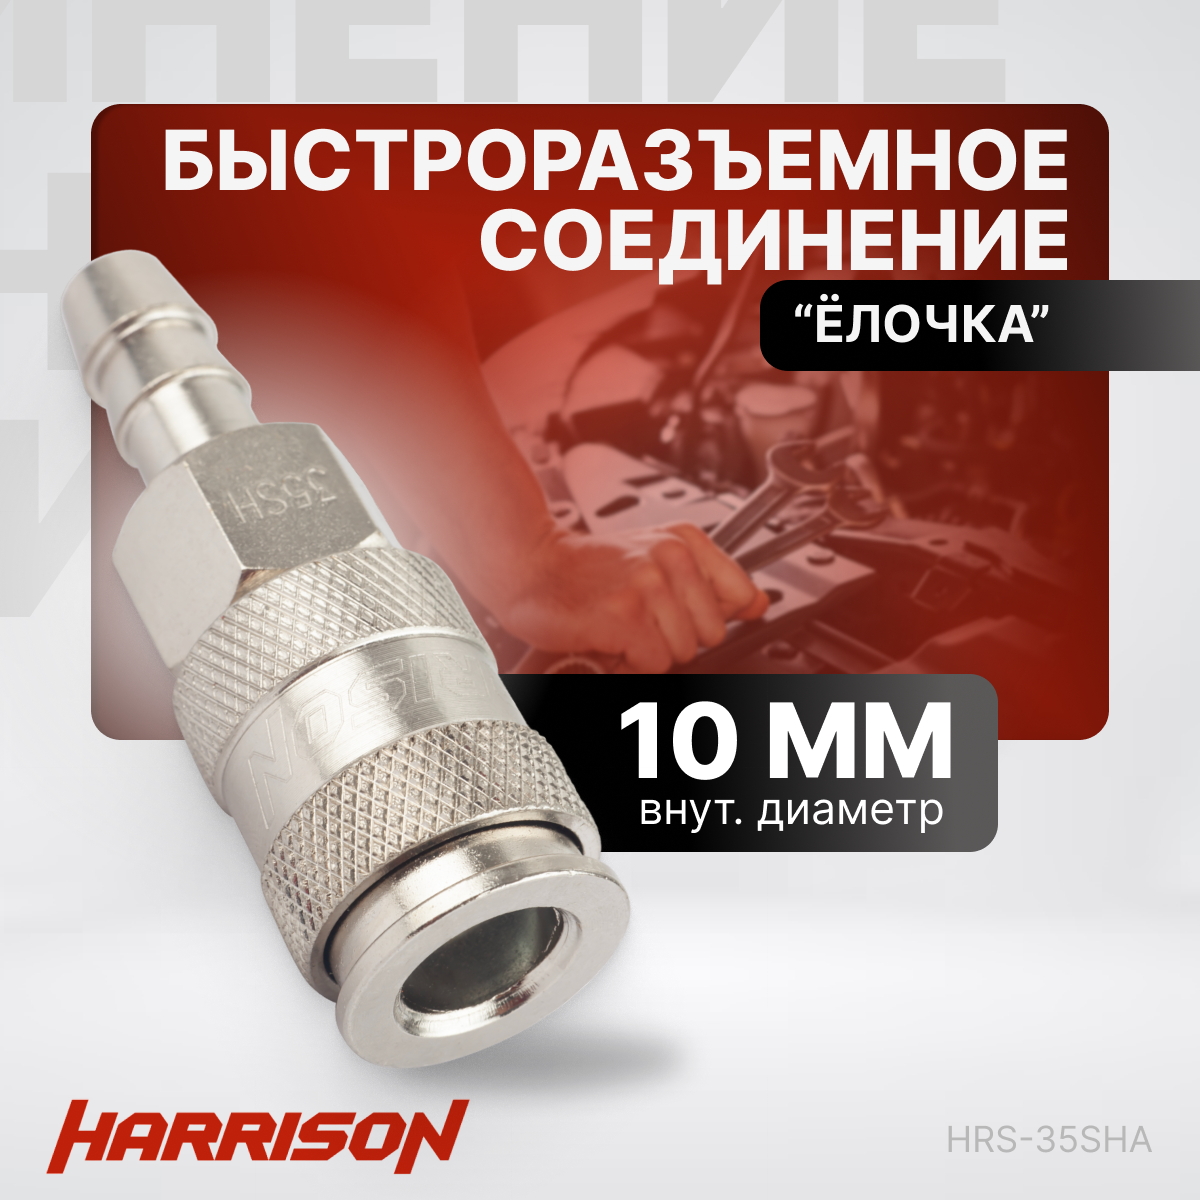 Пневматическое быстроразъемное соединение "елочка" 10мм Harrison HRS-35SHA